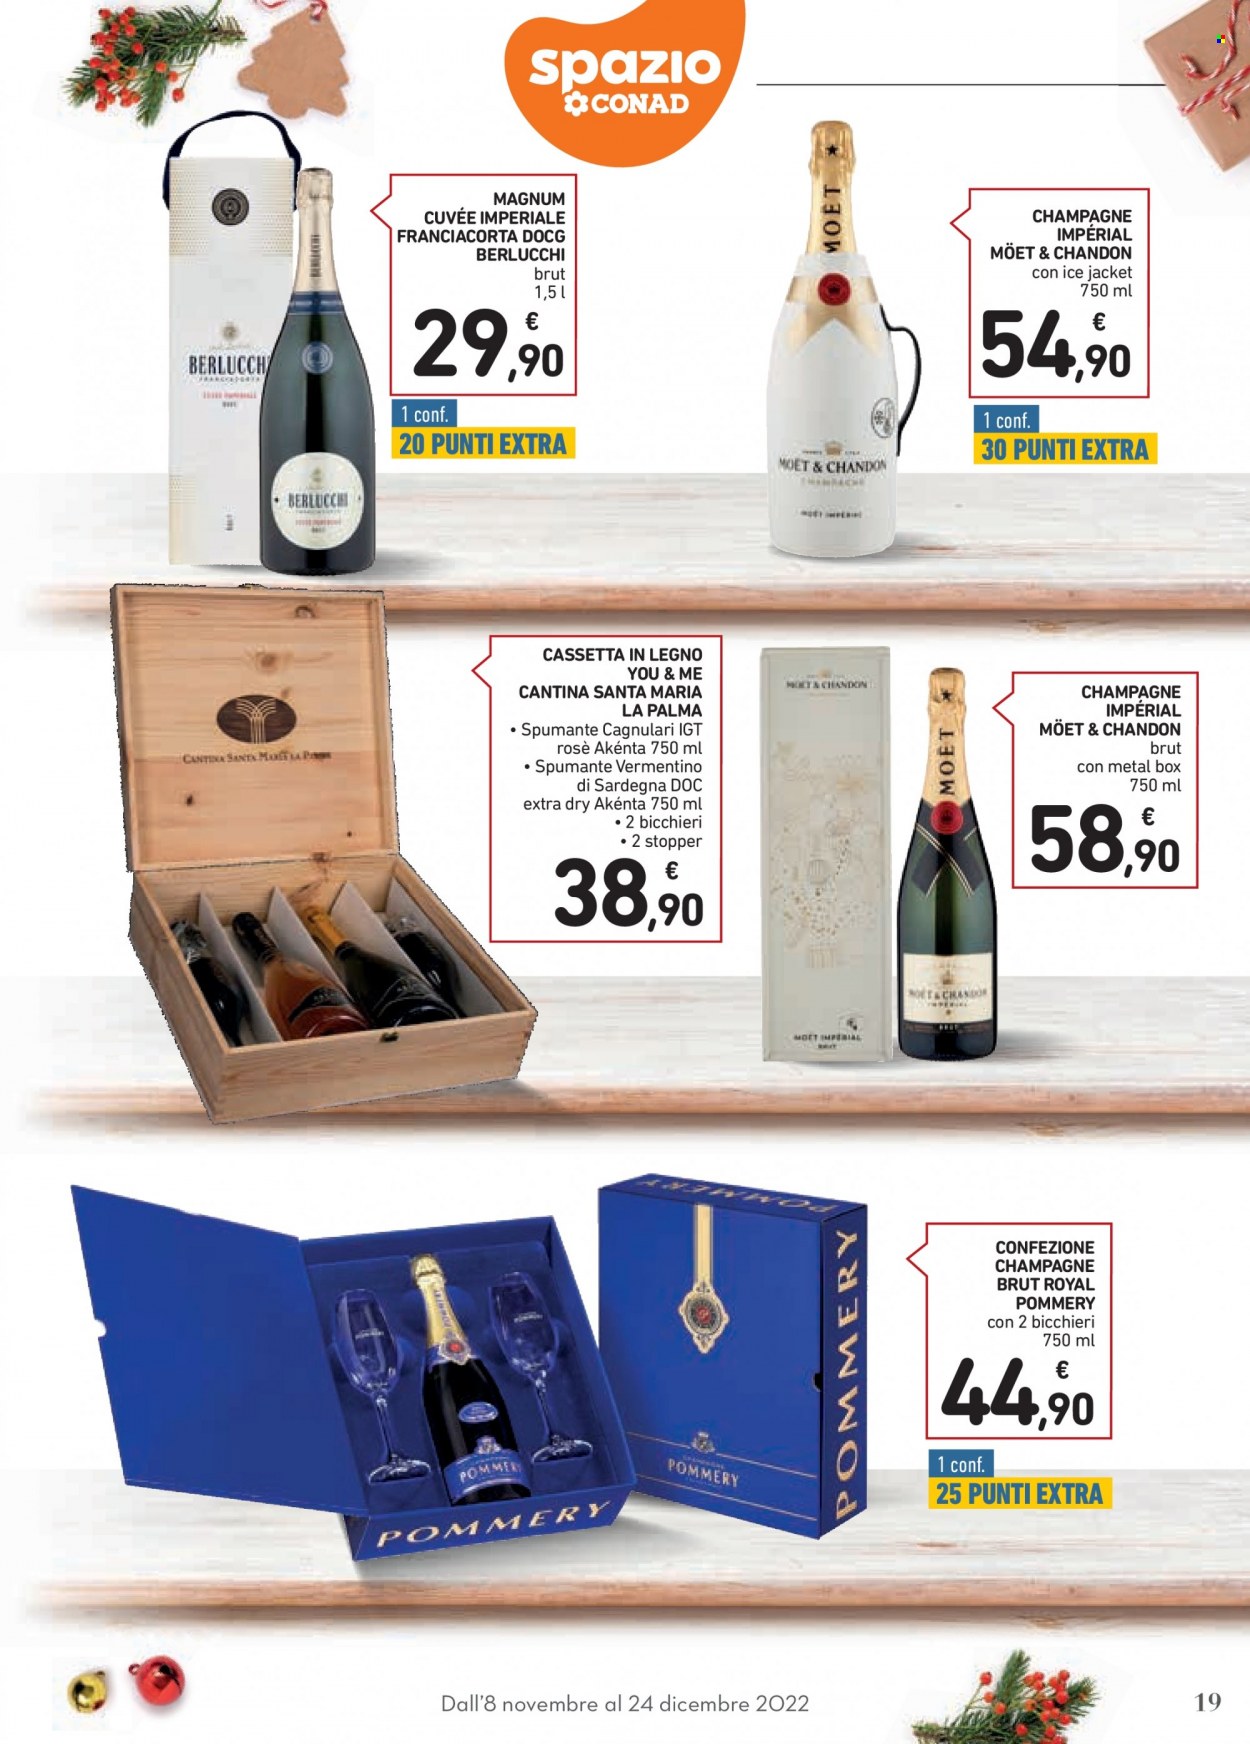 thumbnail - Volantino Conad - 8/11/2022 - 24/12/2022 - Prodotti in offerta - vino bianco, Spumante, Champagne, Moët & Chandon, vino, Vermentino, bicchieri. Pagina 19.